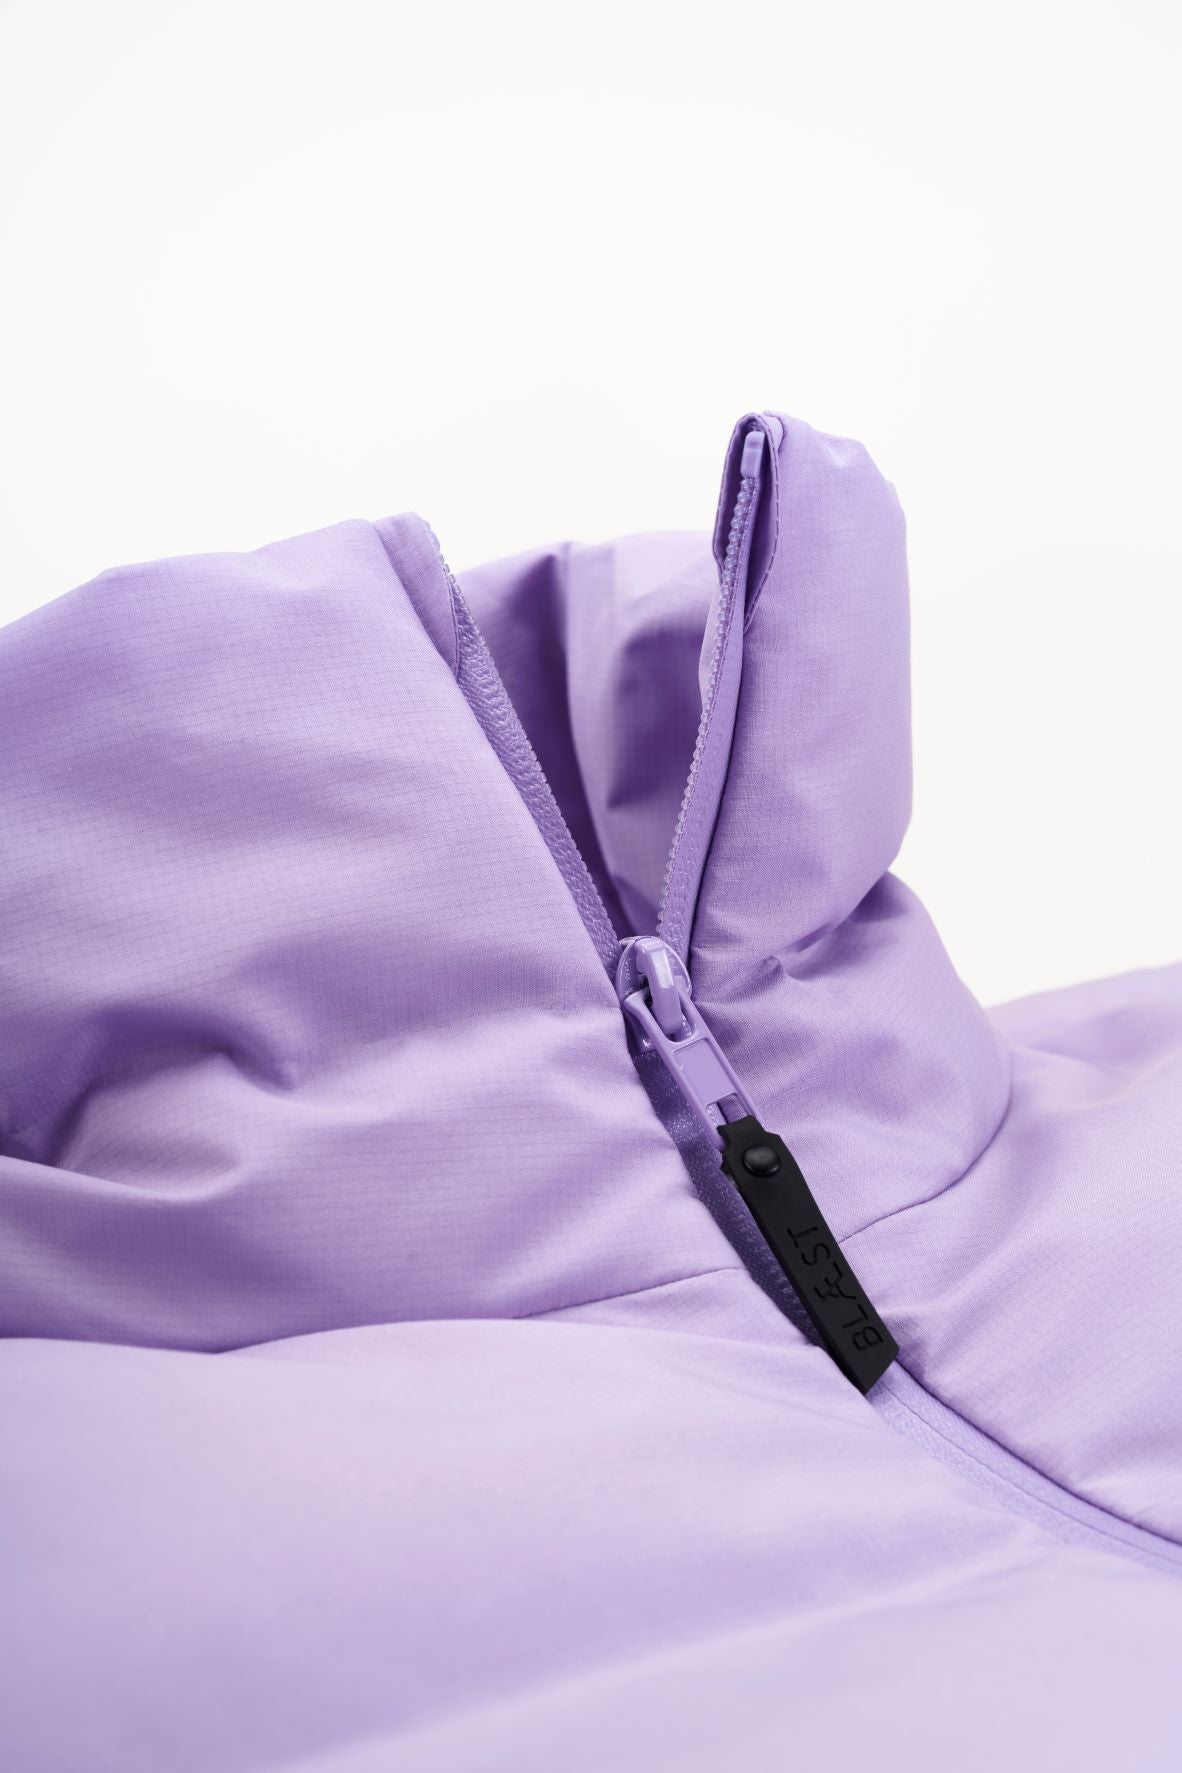 Emblem jacket by Blæst in the color Digital Purple